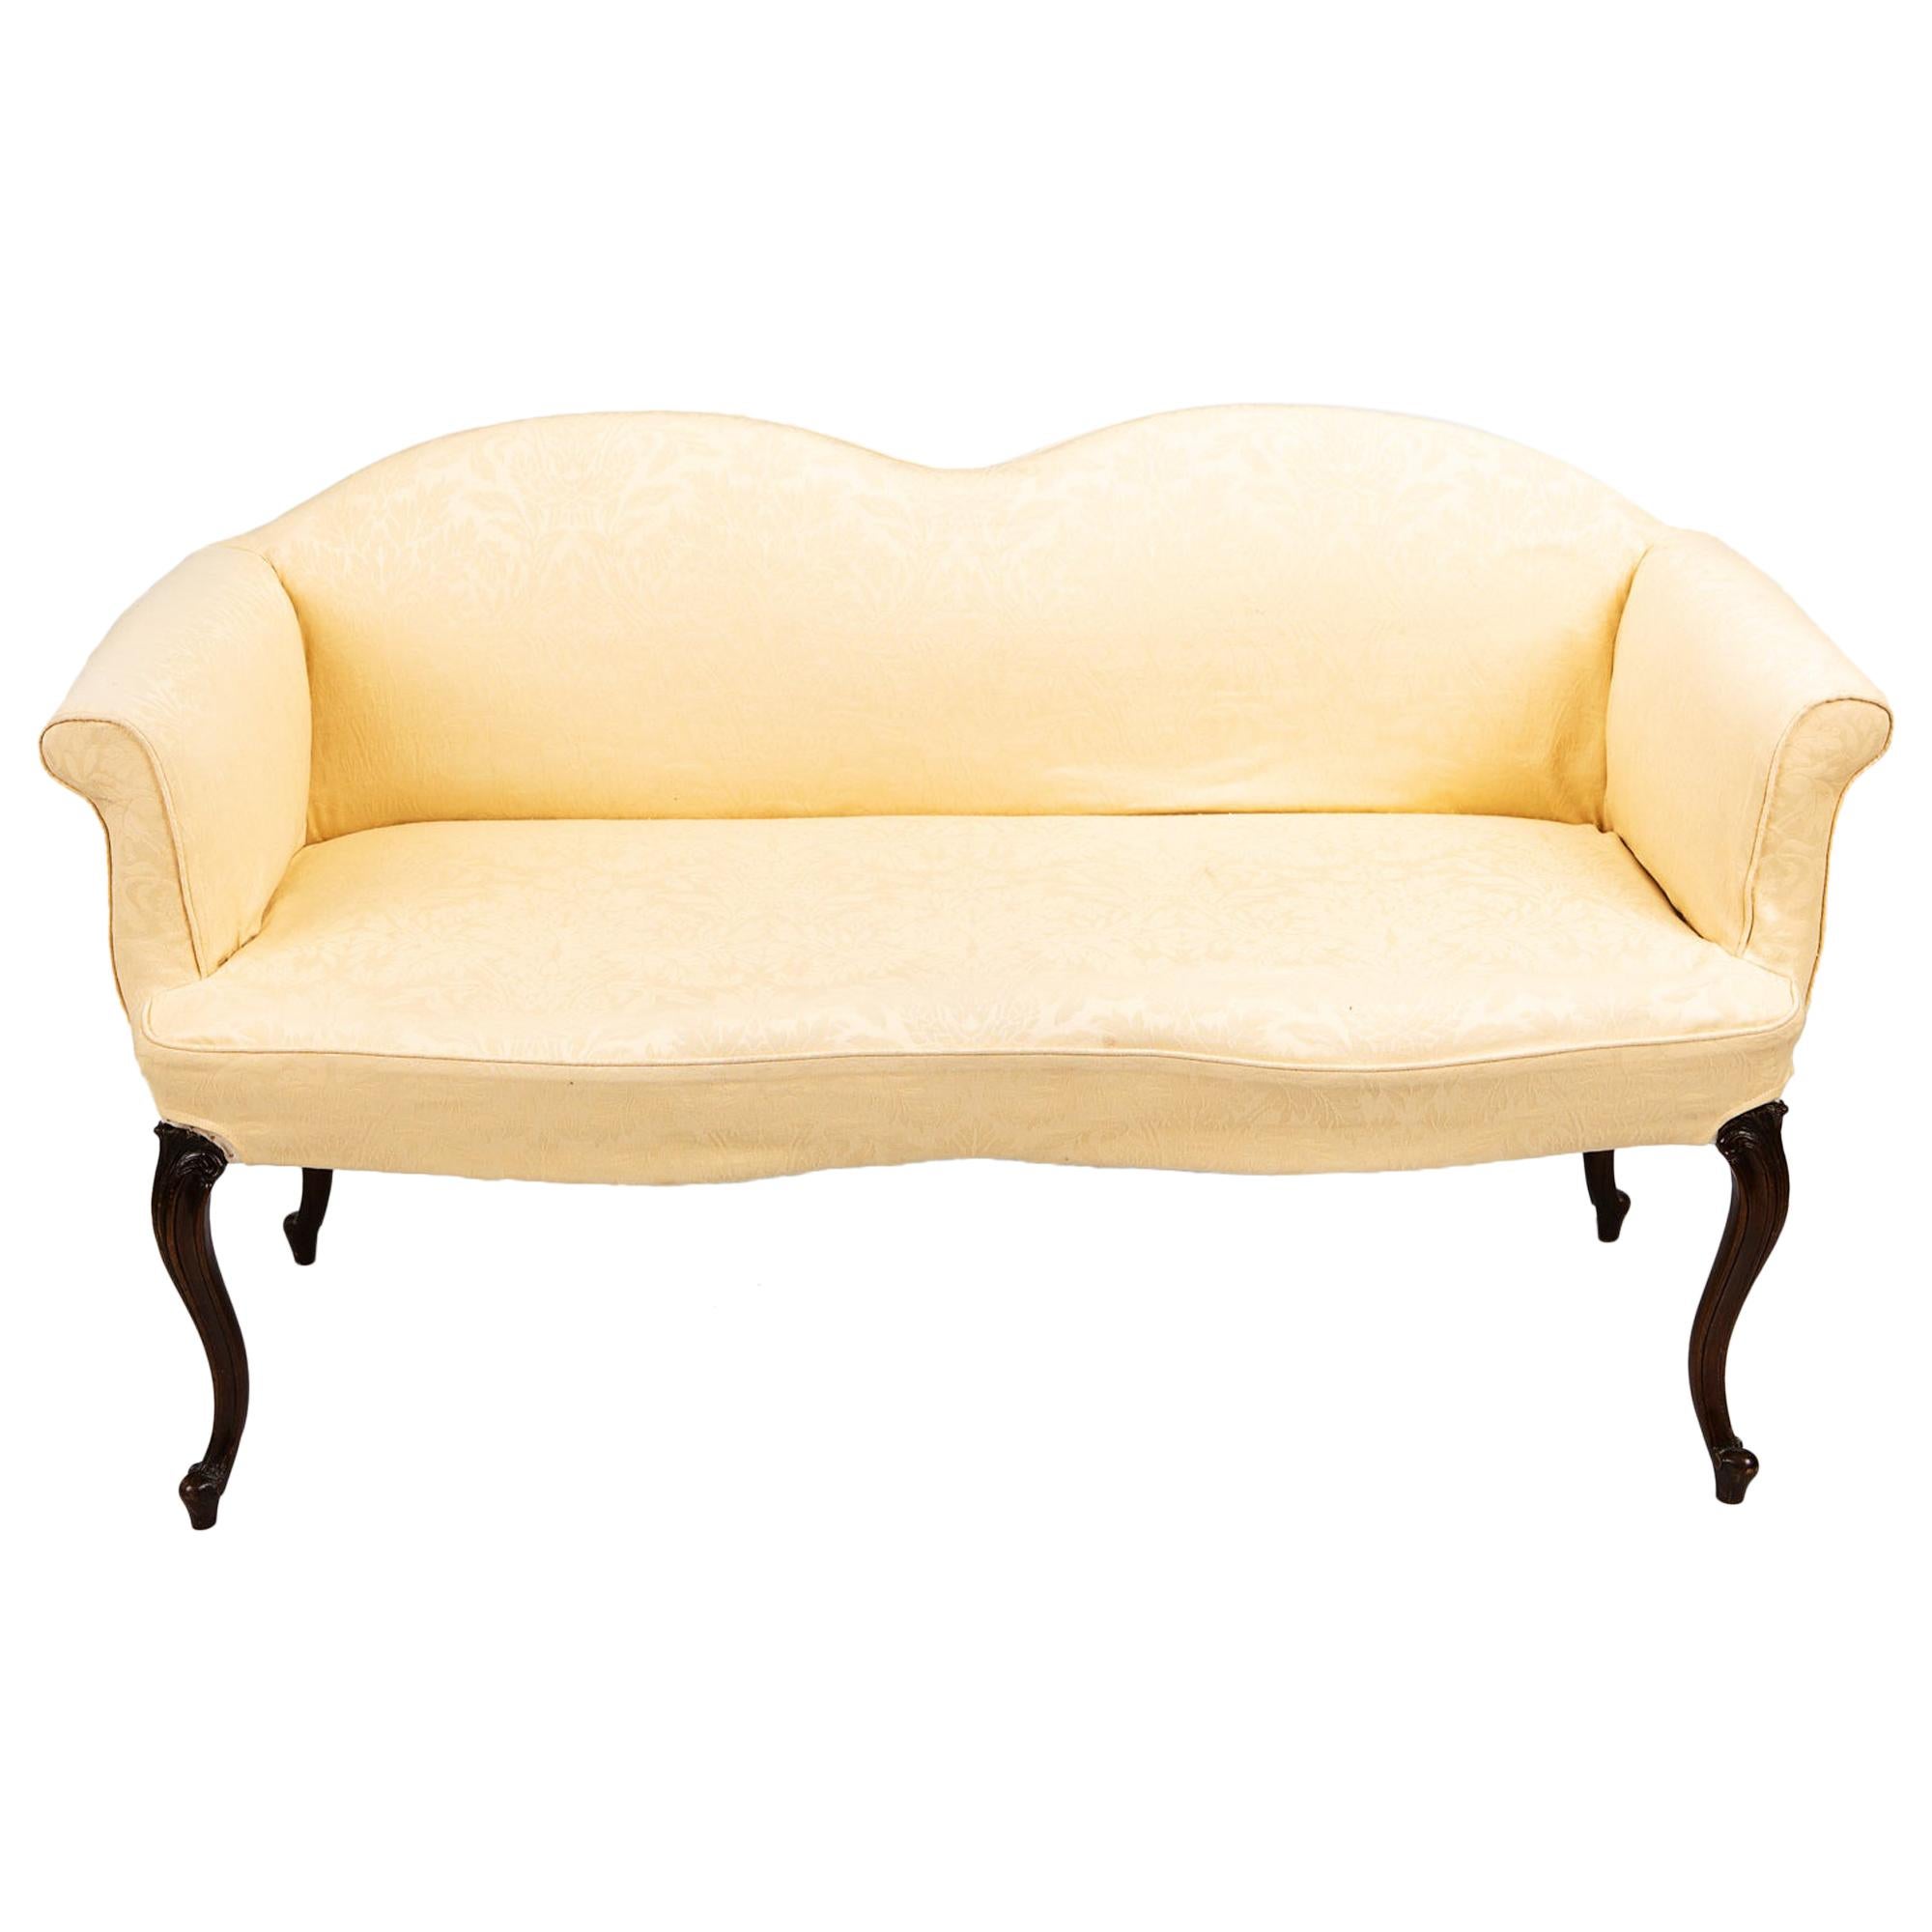 Regency-Sofa aus dem frühen 19. Jahrhundert nach George Hepplewhite